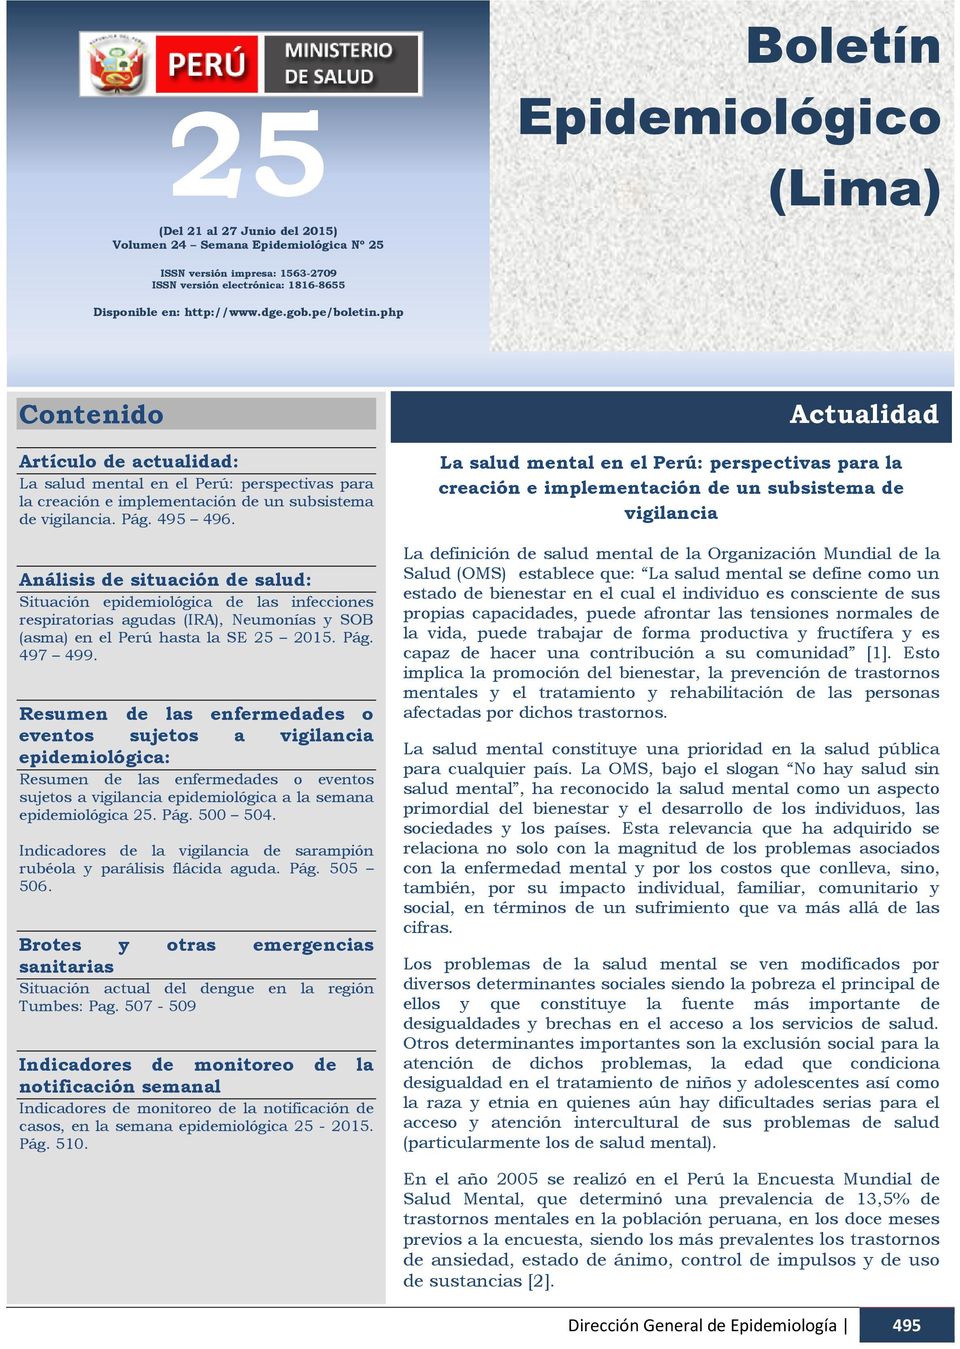 http://www.dge.gob.pe/boletin.php Contenido Artículo de actualidad: La salud mental en el Perú: perspectivas para la creación e implementación de un subsistema de vigilancia. Pág. 495 496.